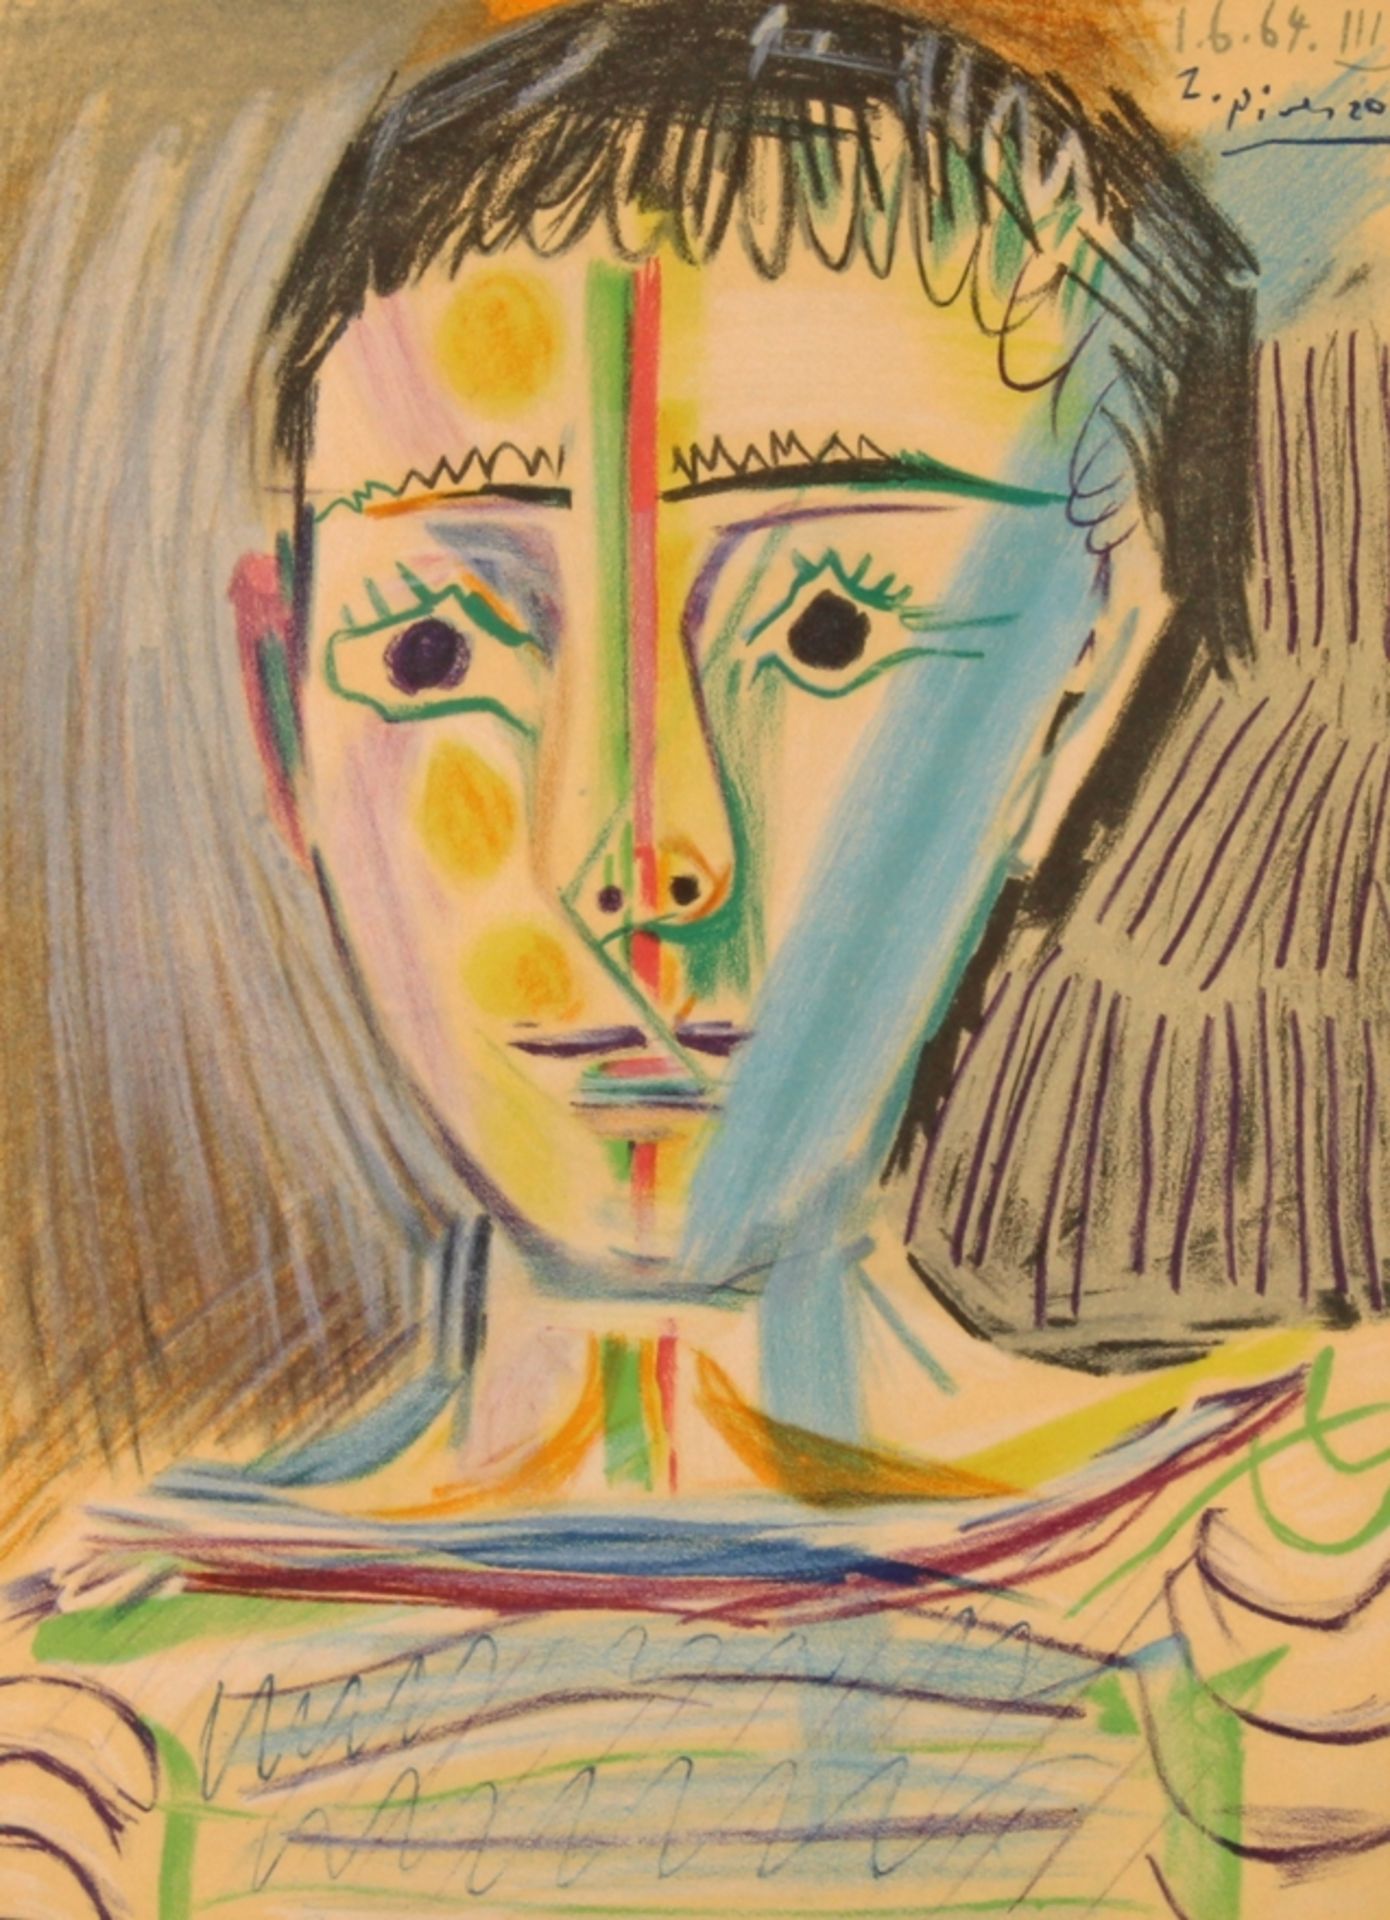 Picasso, Pablo (Malaga 1881 - 1973 Mougins, Studium an der KA Madrid, Maler, Grafiker und Bildhauer